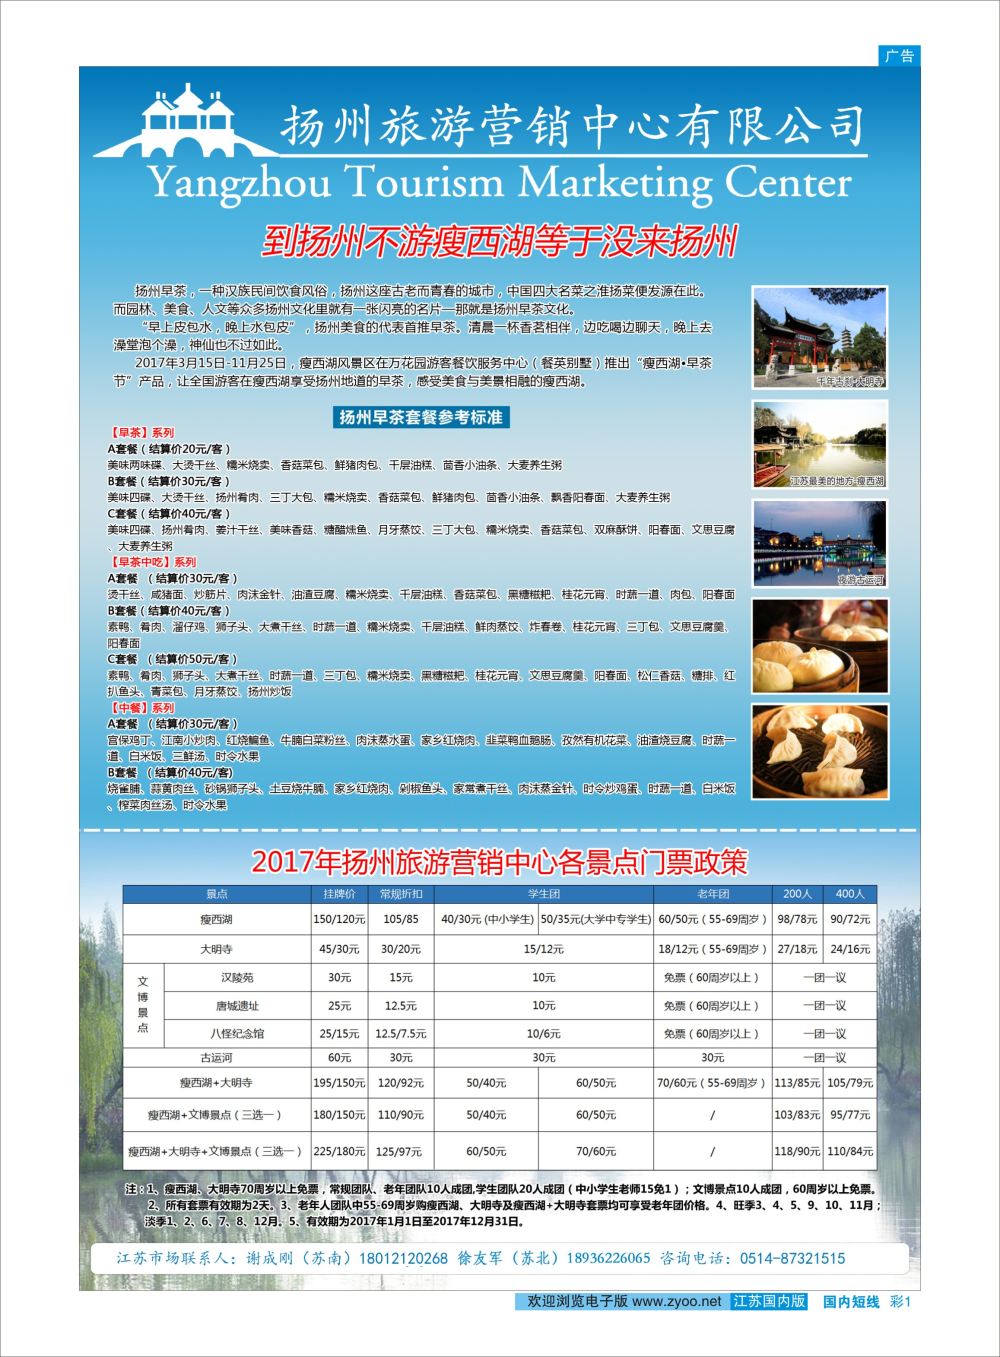 彩01 扬州旅游营销中心-2017景区门票政策及推荐线路   华东扬州